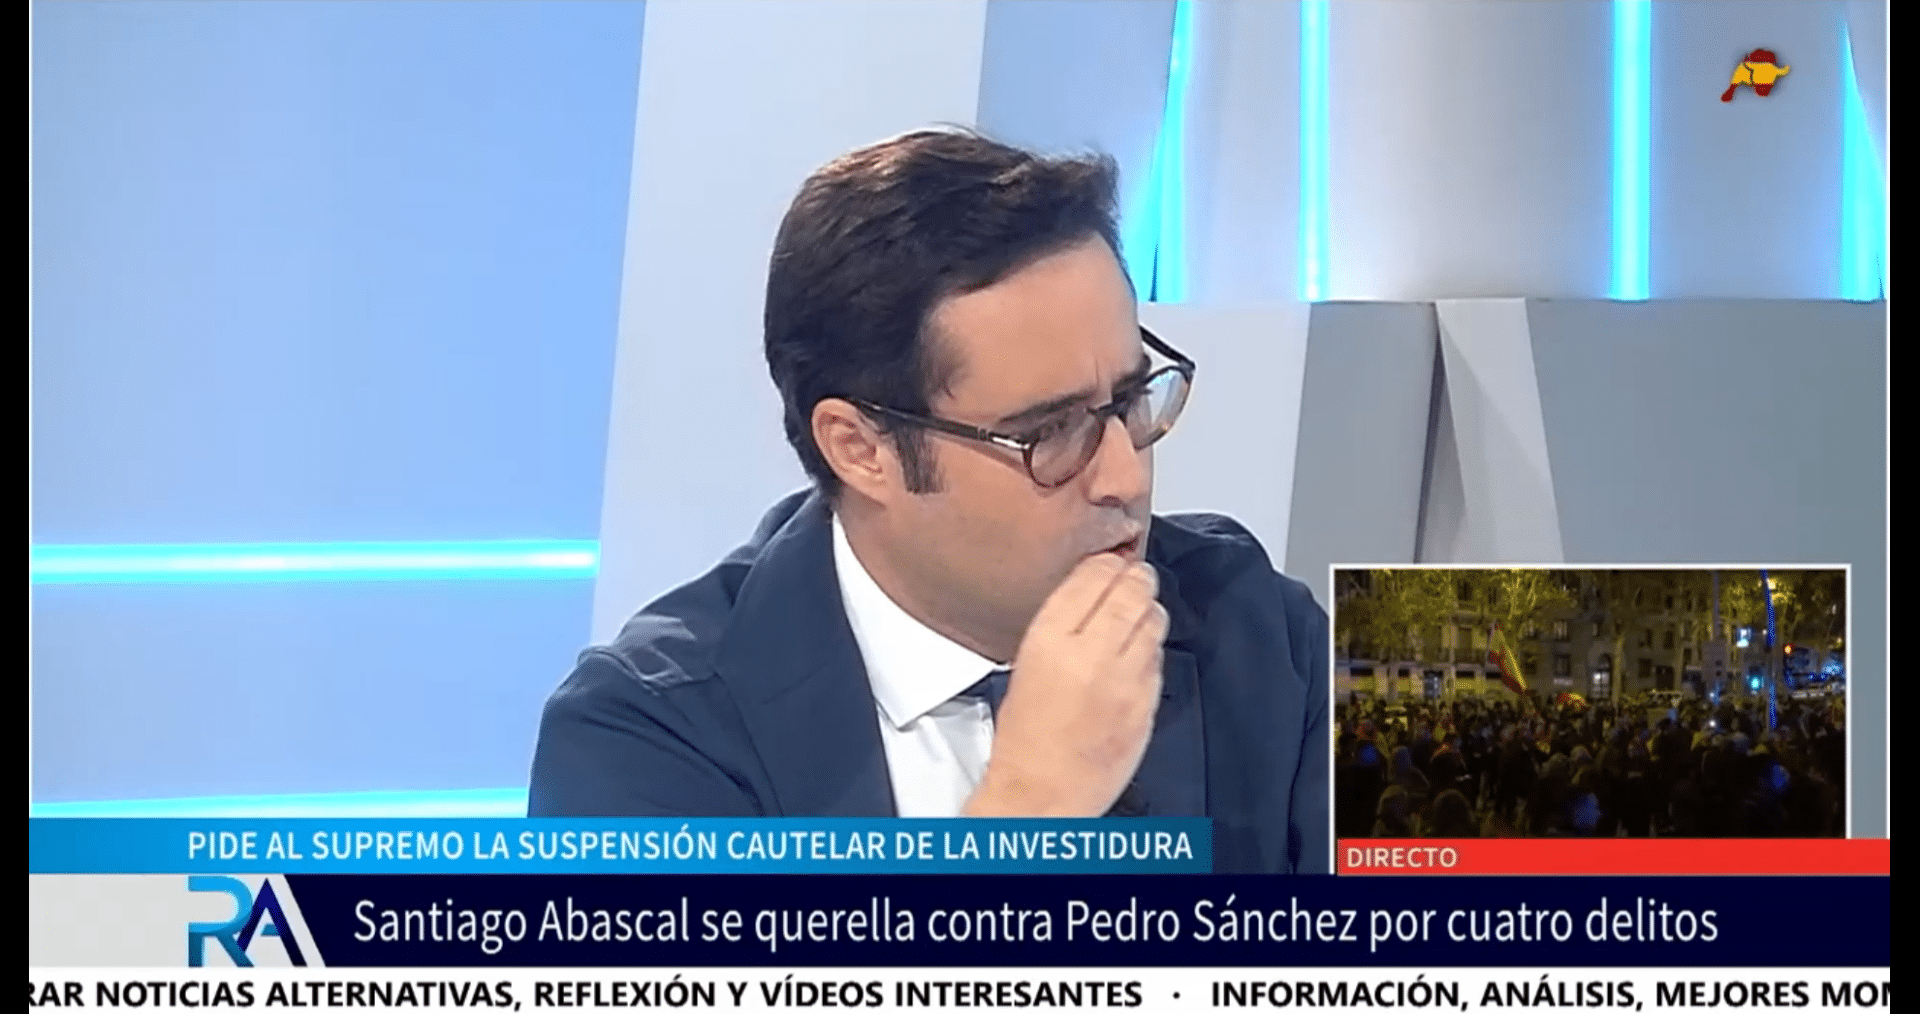  Ignacio Hoces, diputado de VOX, contundente contra Sánchez: «Es un atentado histórico contra la nación»